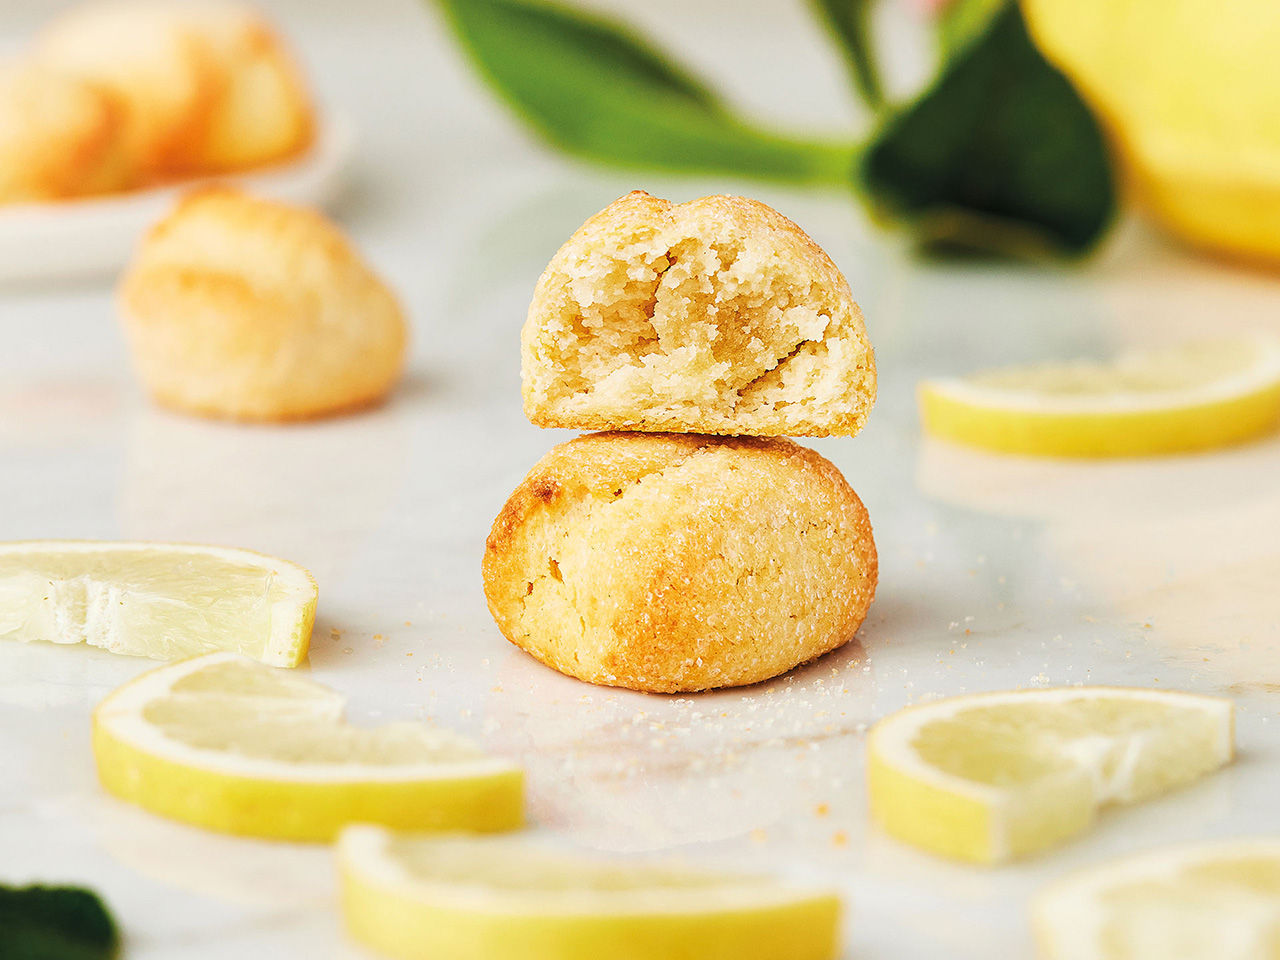 Amaretti au citron - Biscuit italien aux amandes parfumé au citron